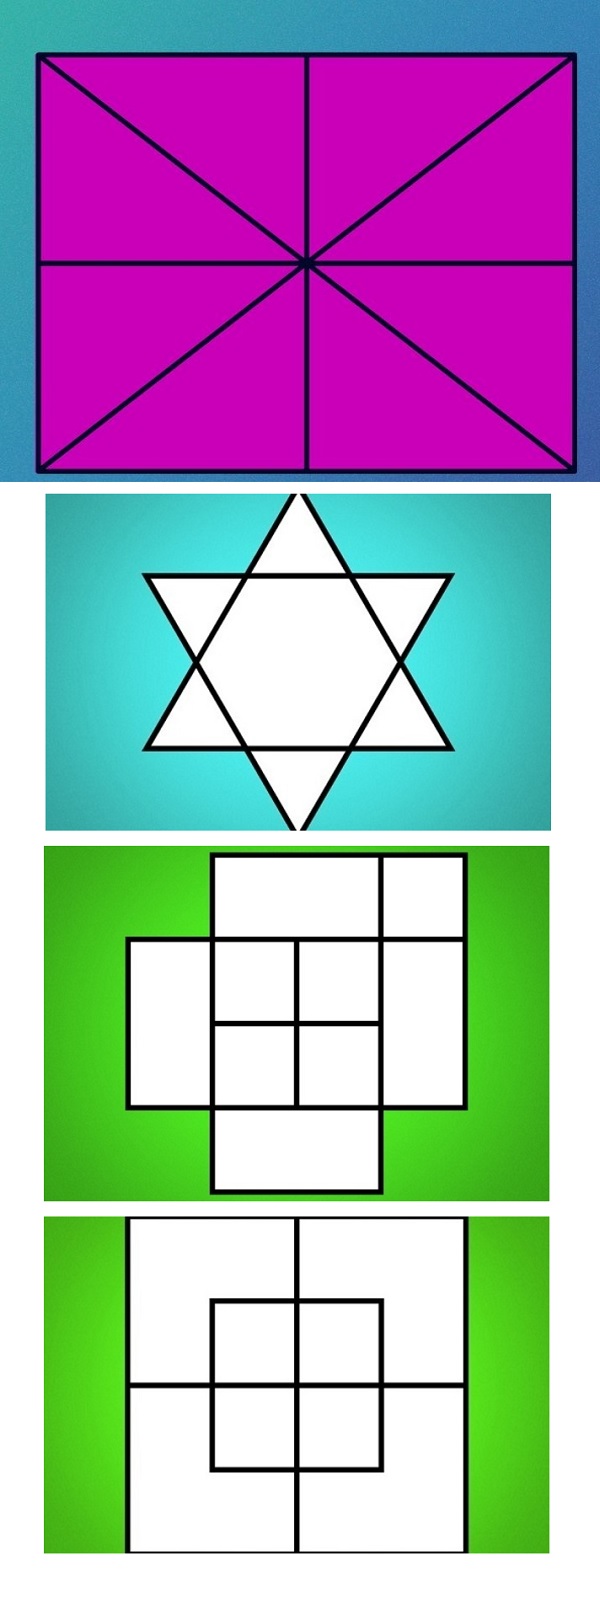 bài toán đếm hình tam giác